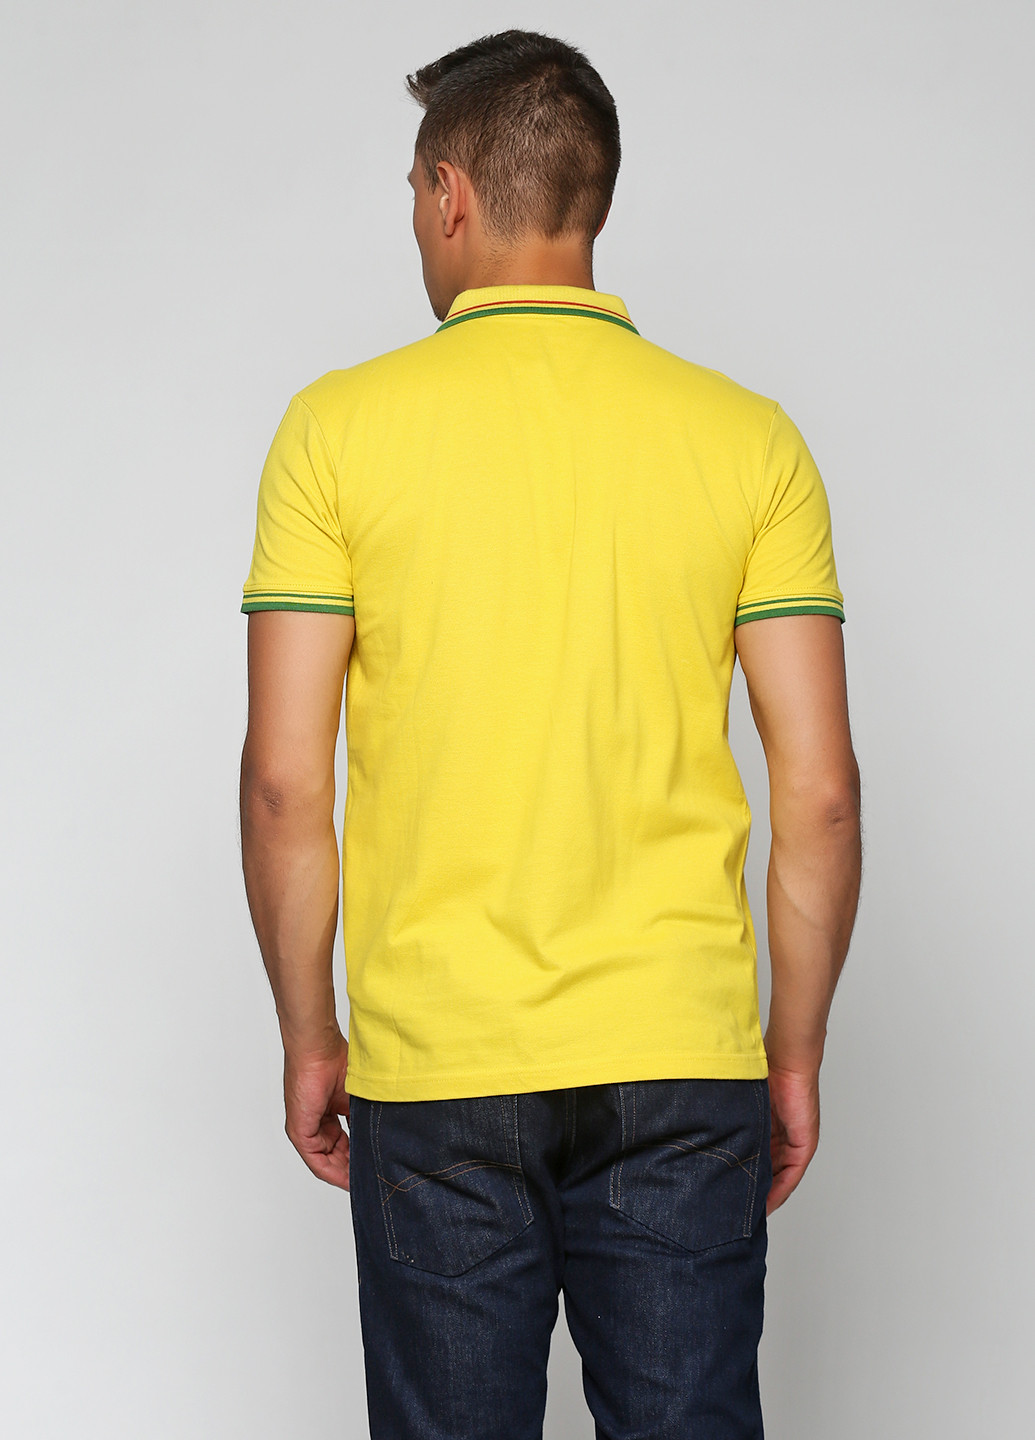 Желтая футболка-поло для мужчин Rifle однотонная